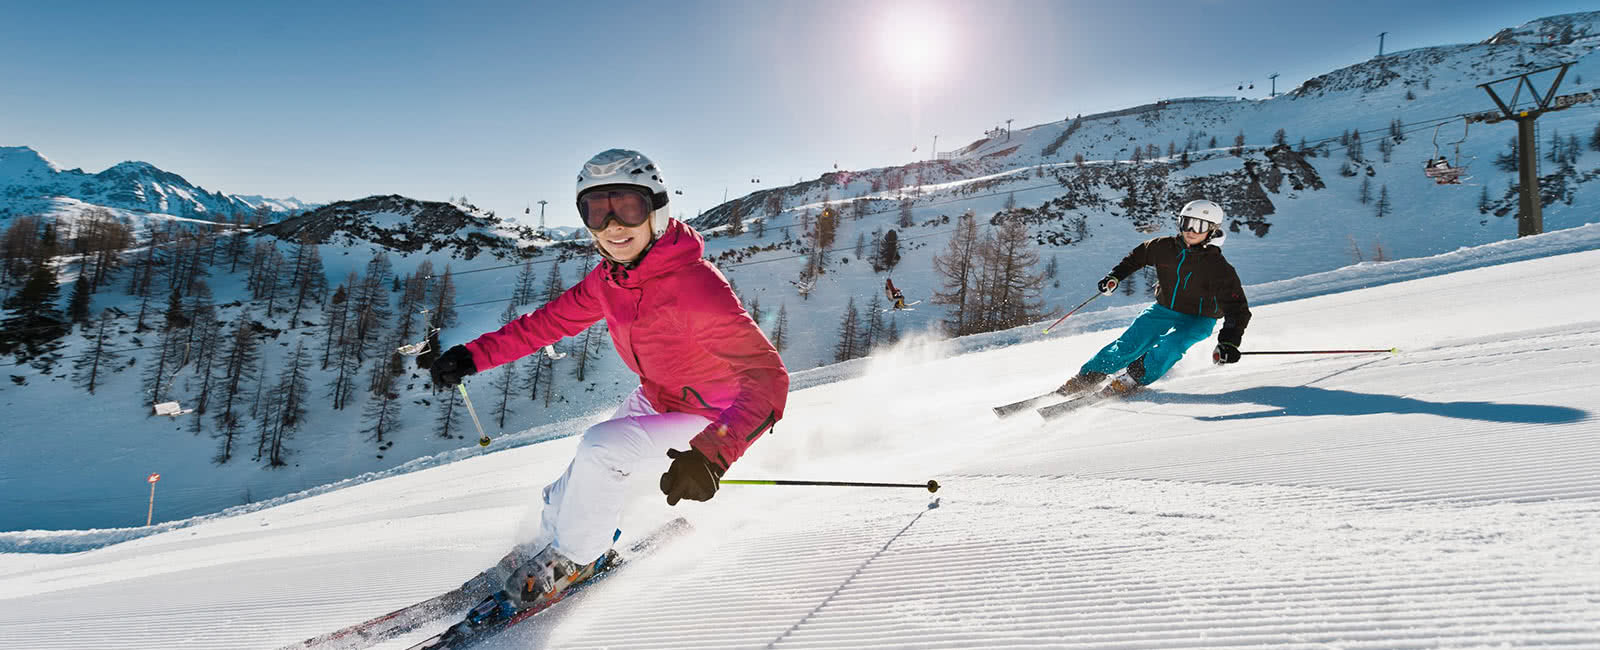 Enjoy a ski vacation in Breckenridge, Colorado with Hilton Grand Vacations